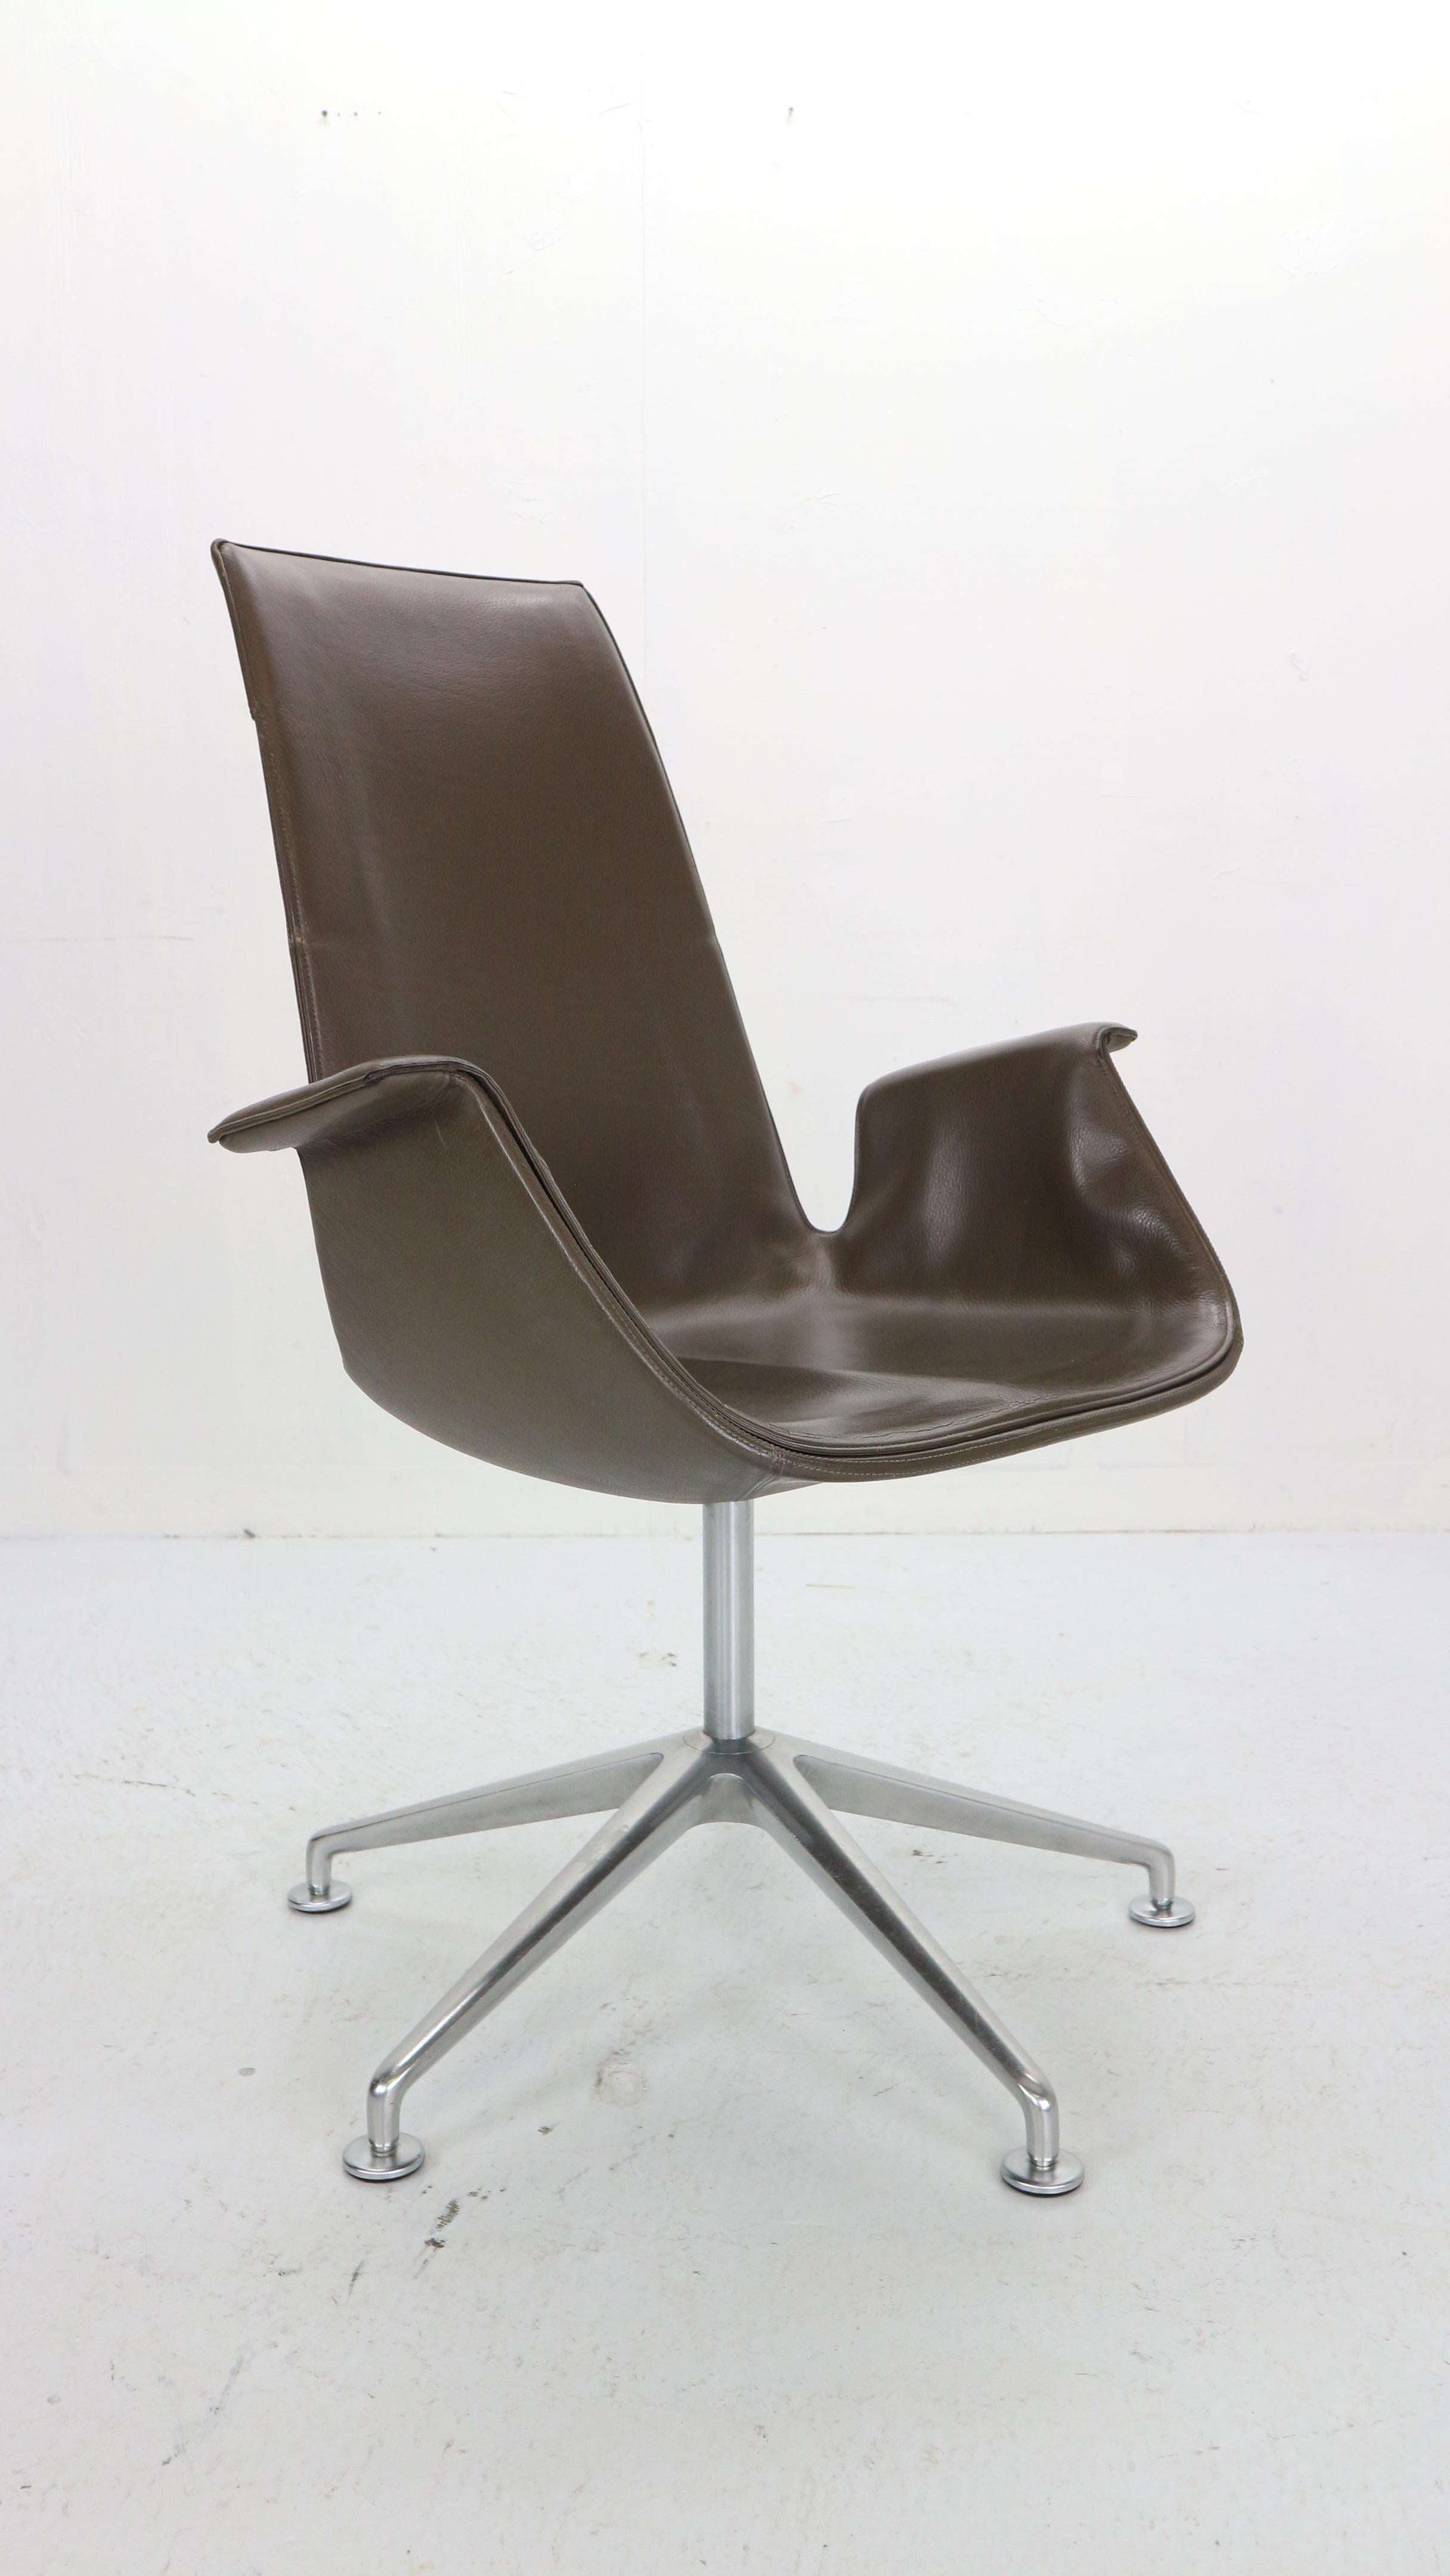 Fauteuils - chaises de bureau conçus par Preben Fabricius & Jørgen Kastholm pour Walter Knool International, fabriqués dans le Danemark des années 1960.
Numéro de modèle : FK6725 ainsi que la plupart des chaises appelées 